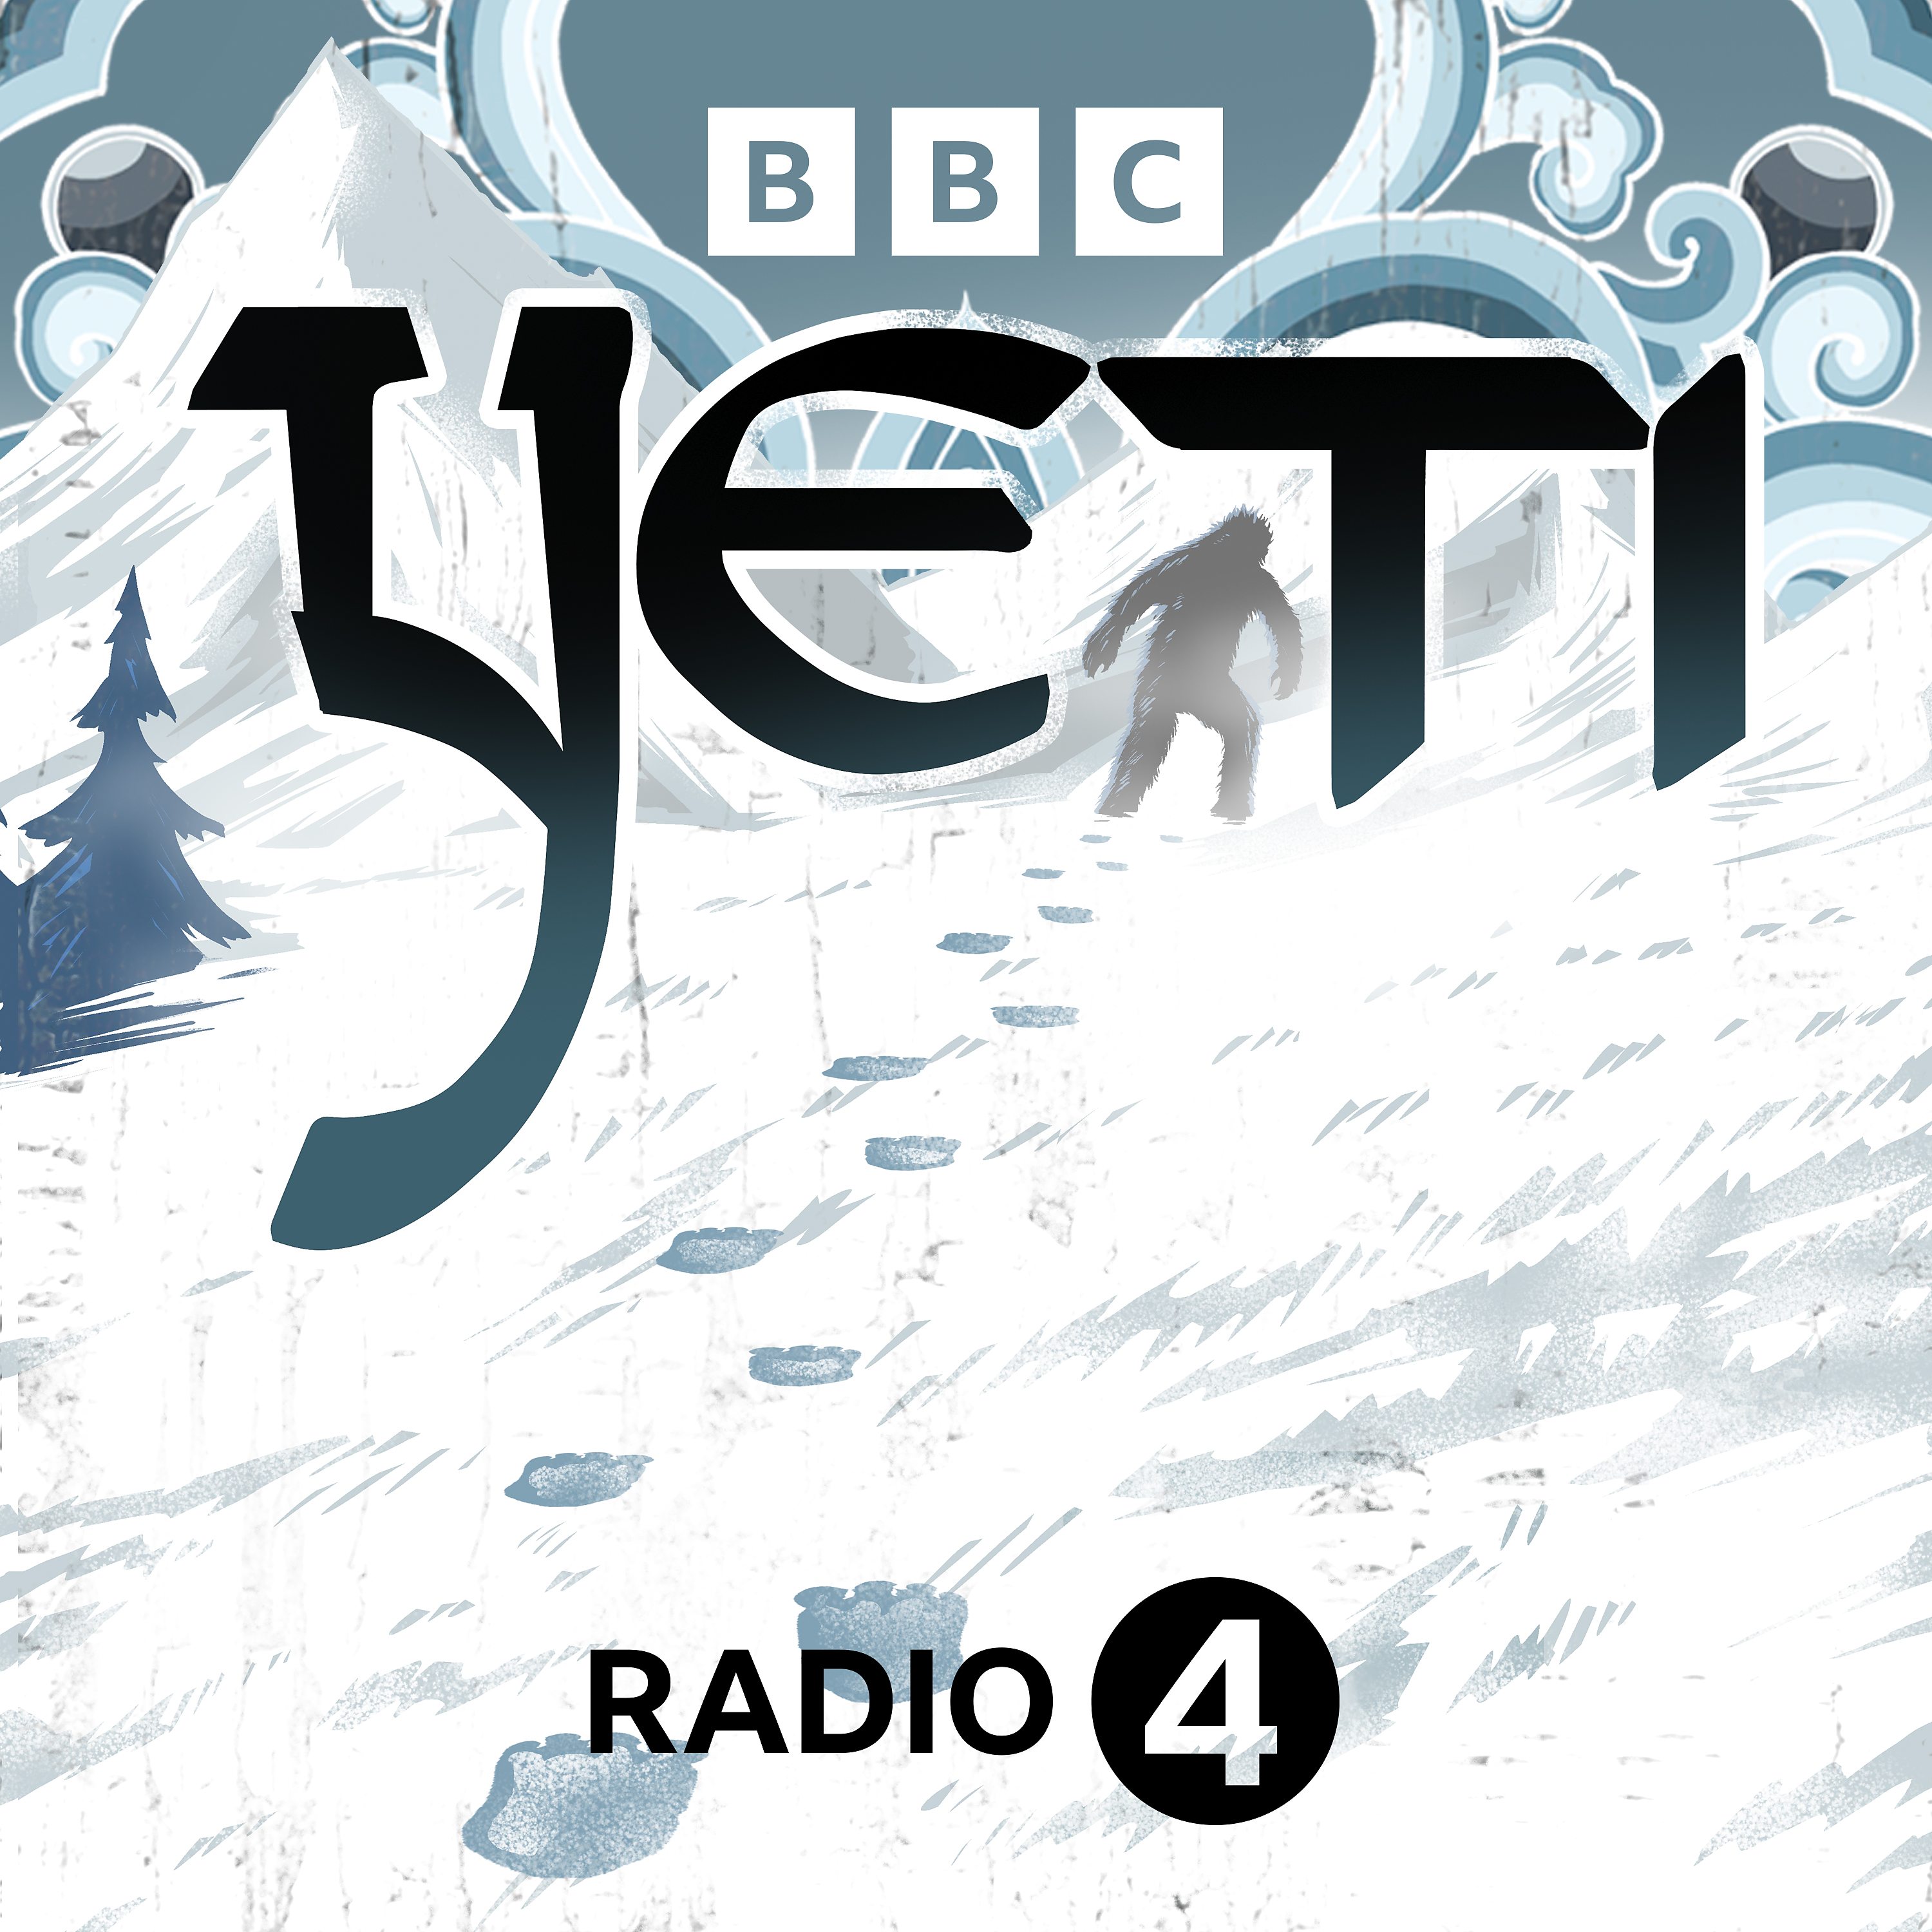 Yeti podcast show image